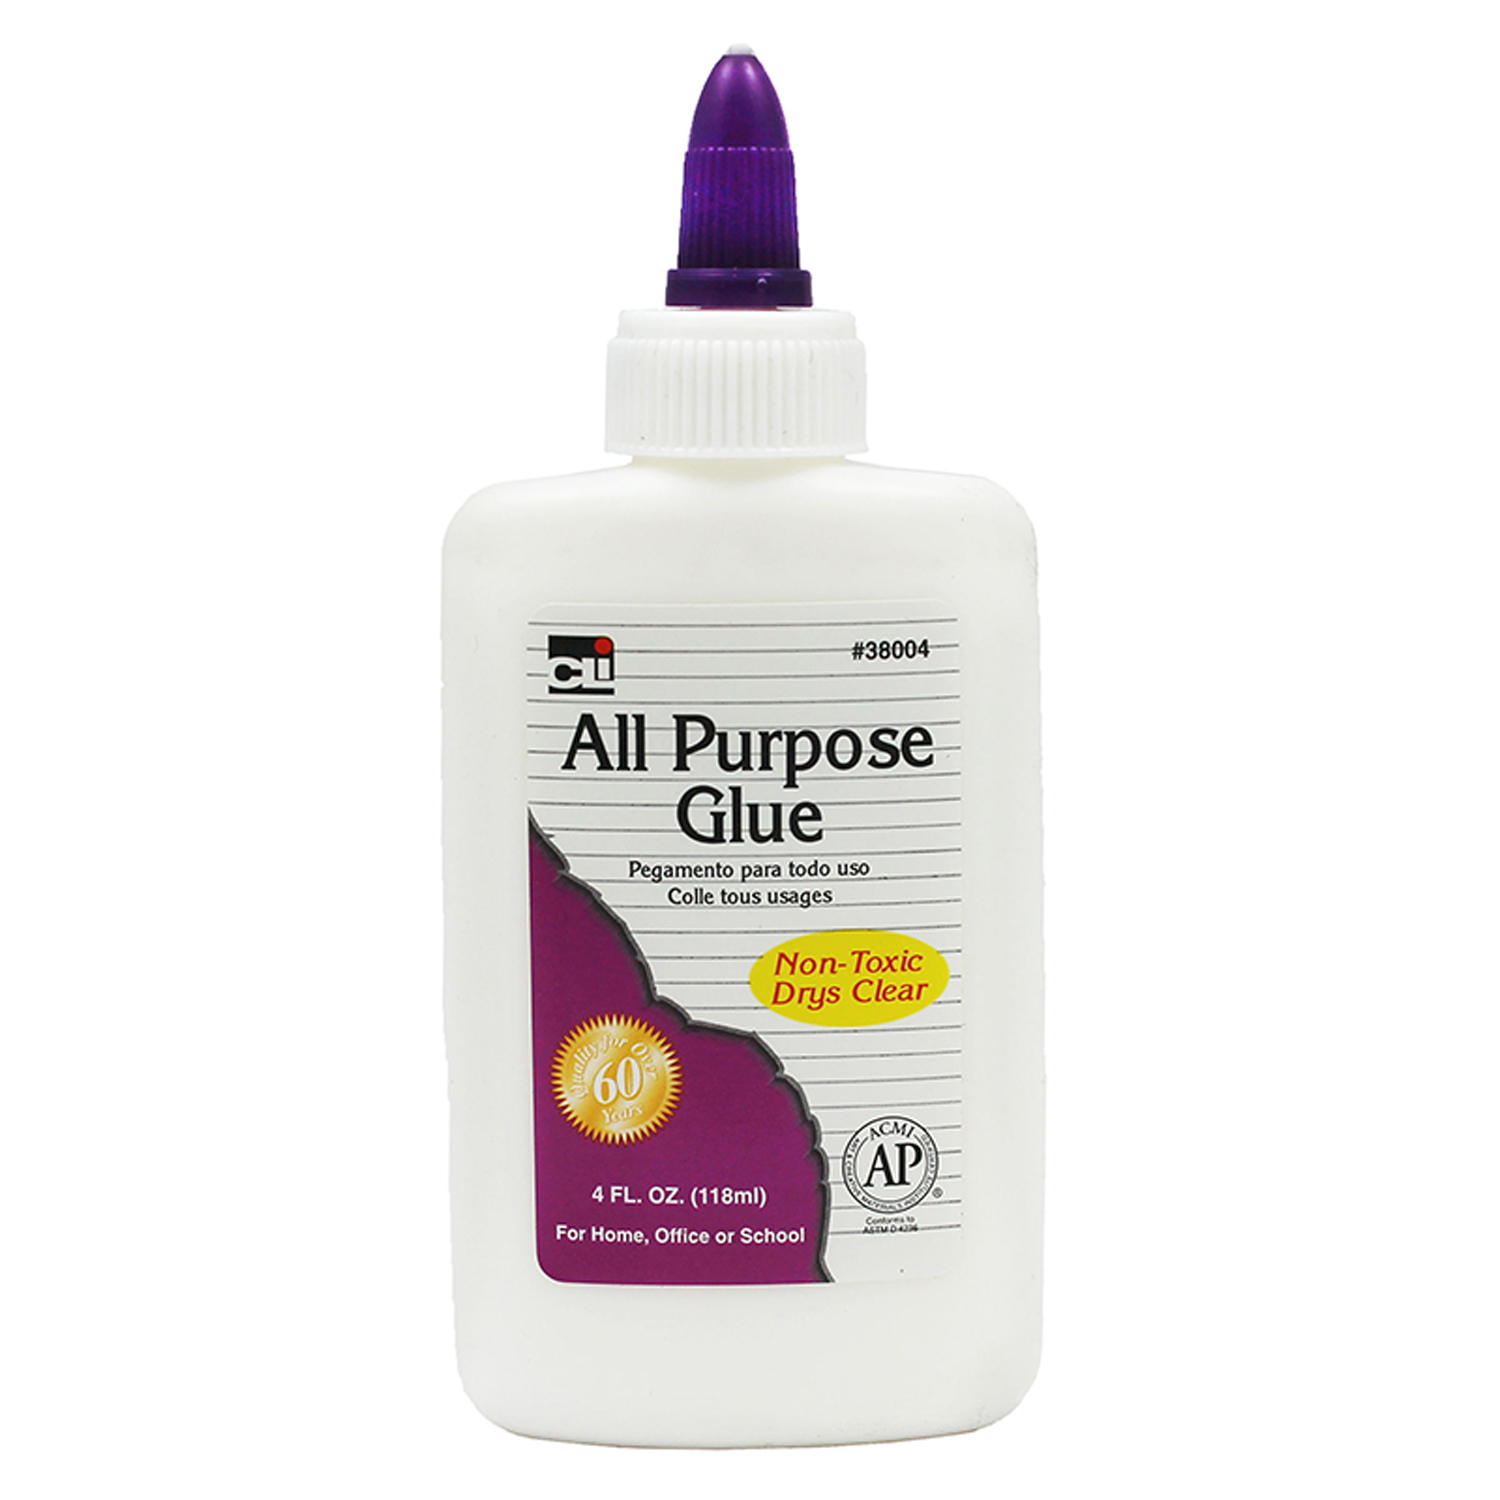 All-Purpose School Glue, AP Certified, 4 oz. Bottle, White, 1 Each